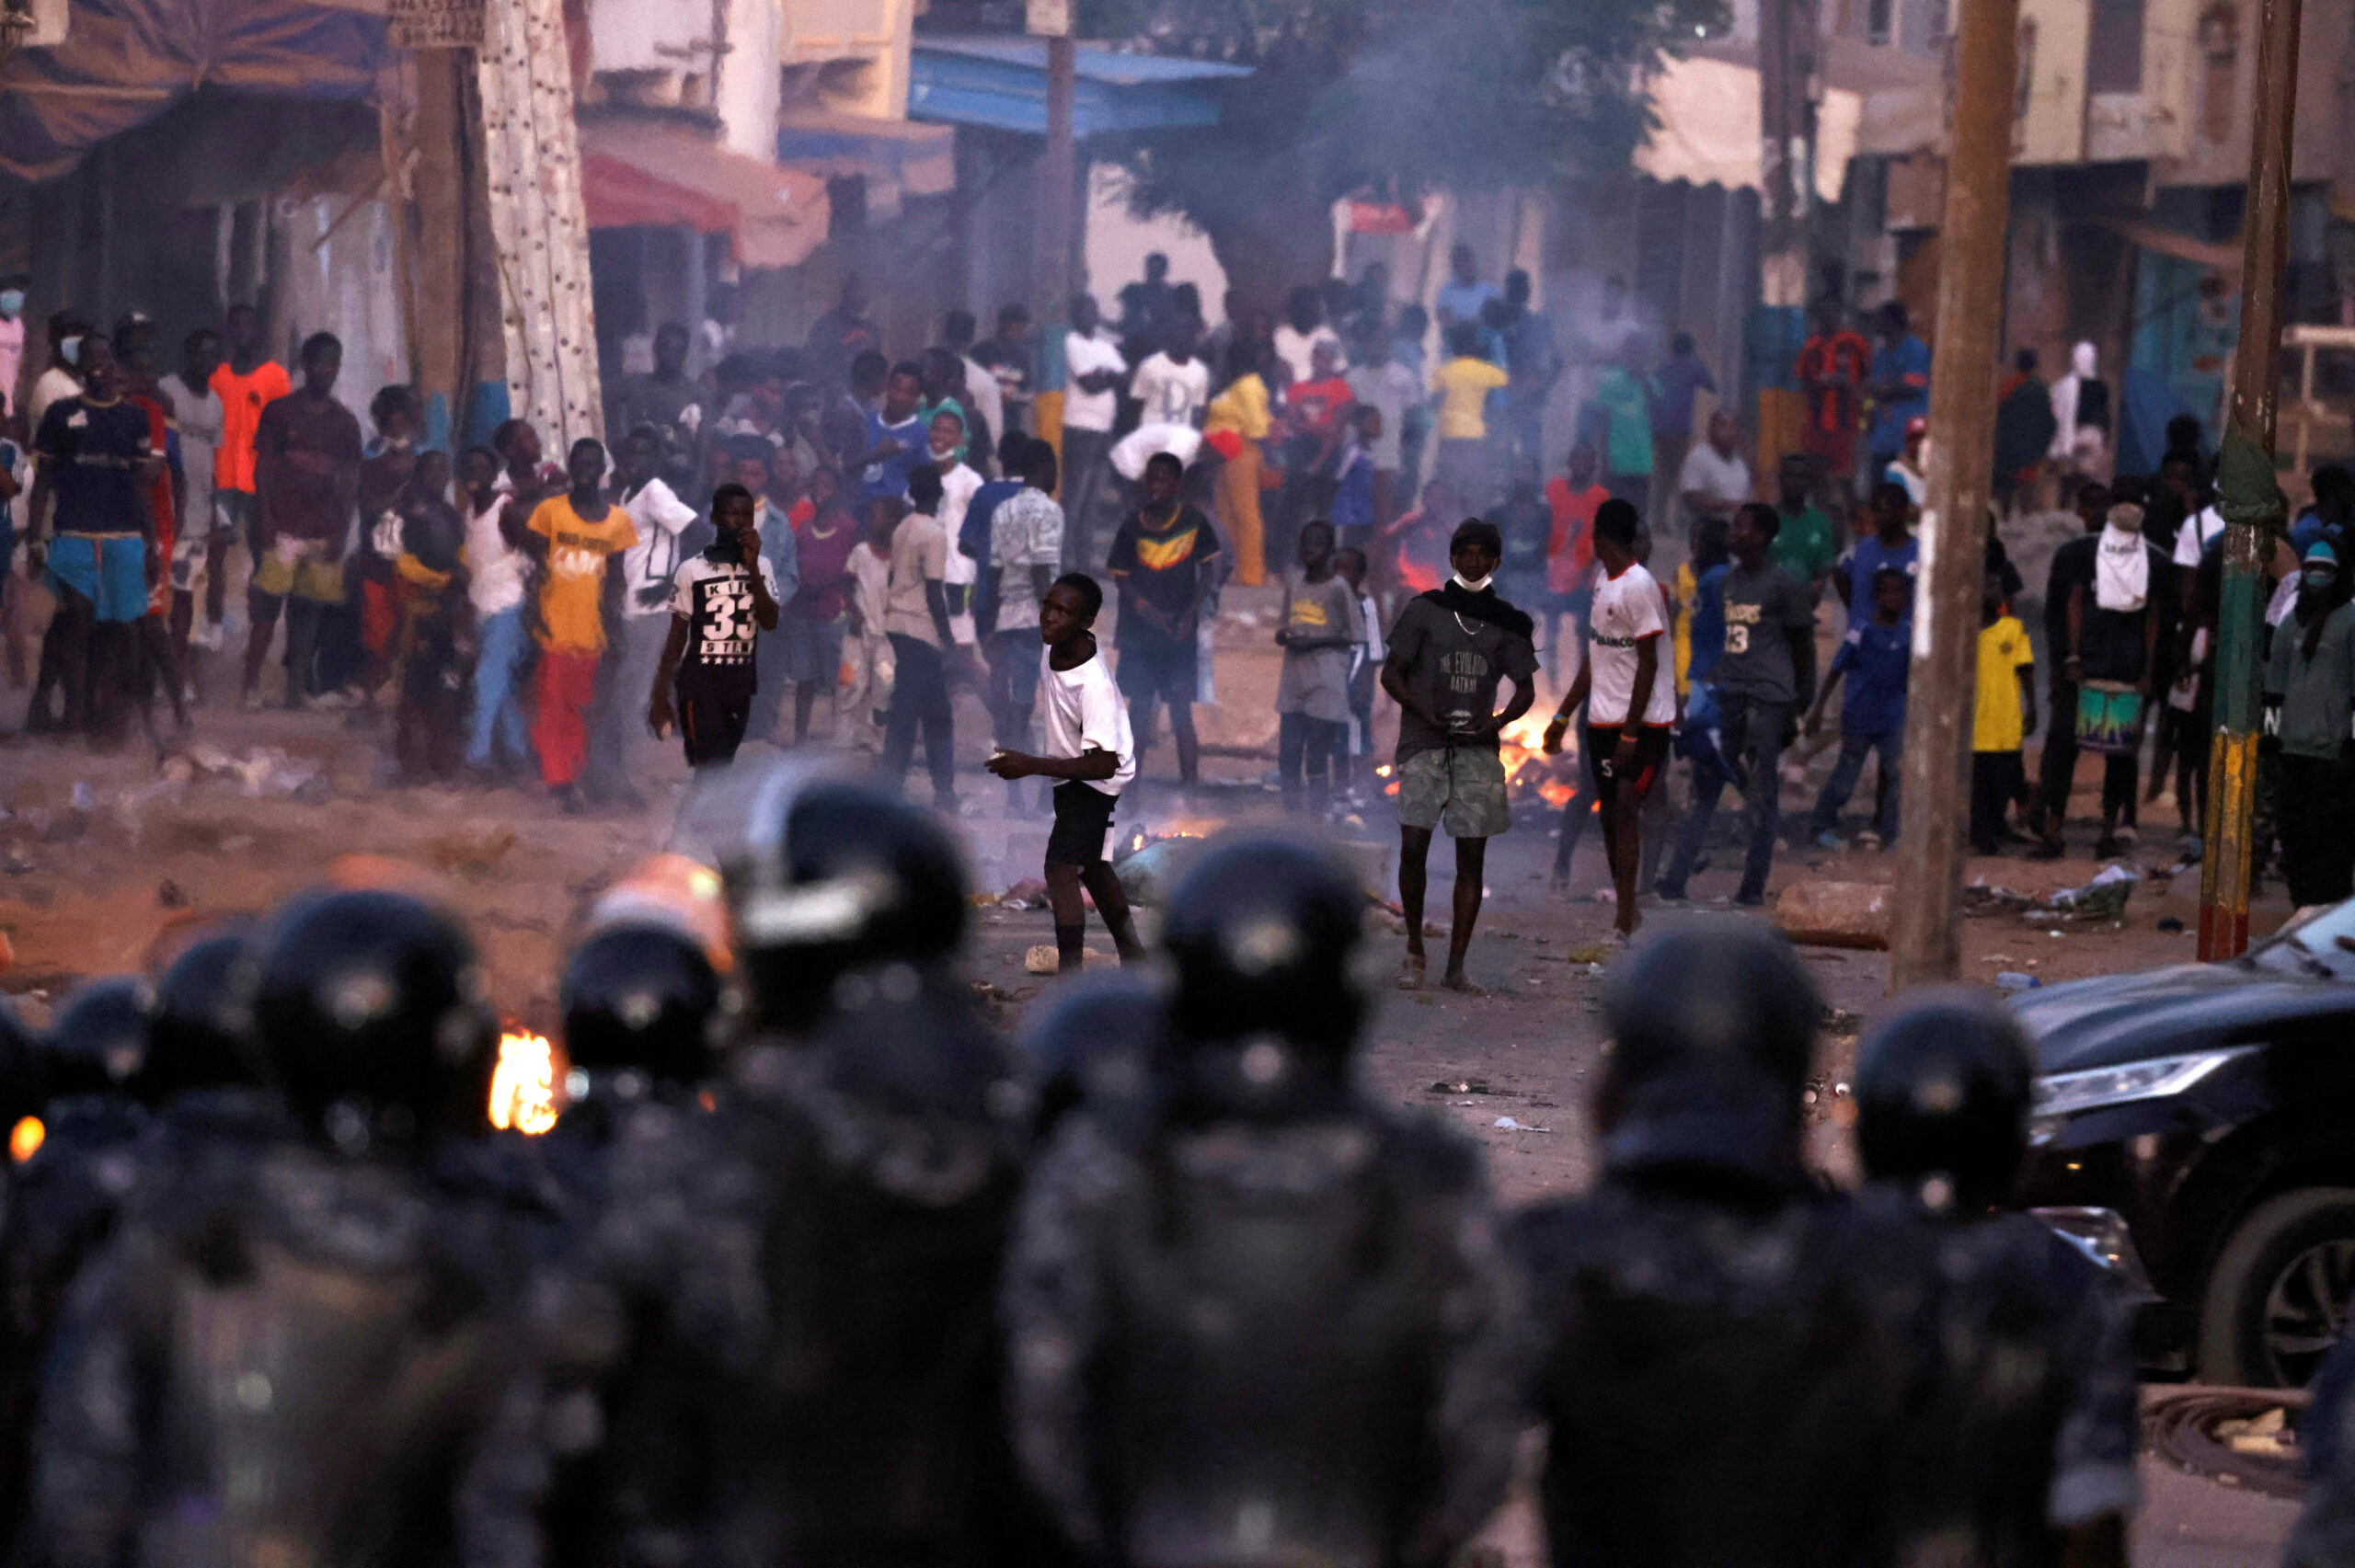 Sénégal: Inquiétudes face à la répression meurtrière, à la violence et aux restrictions de l’accès à l’internet